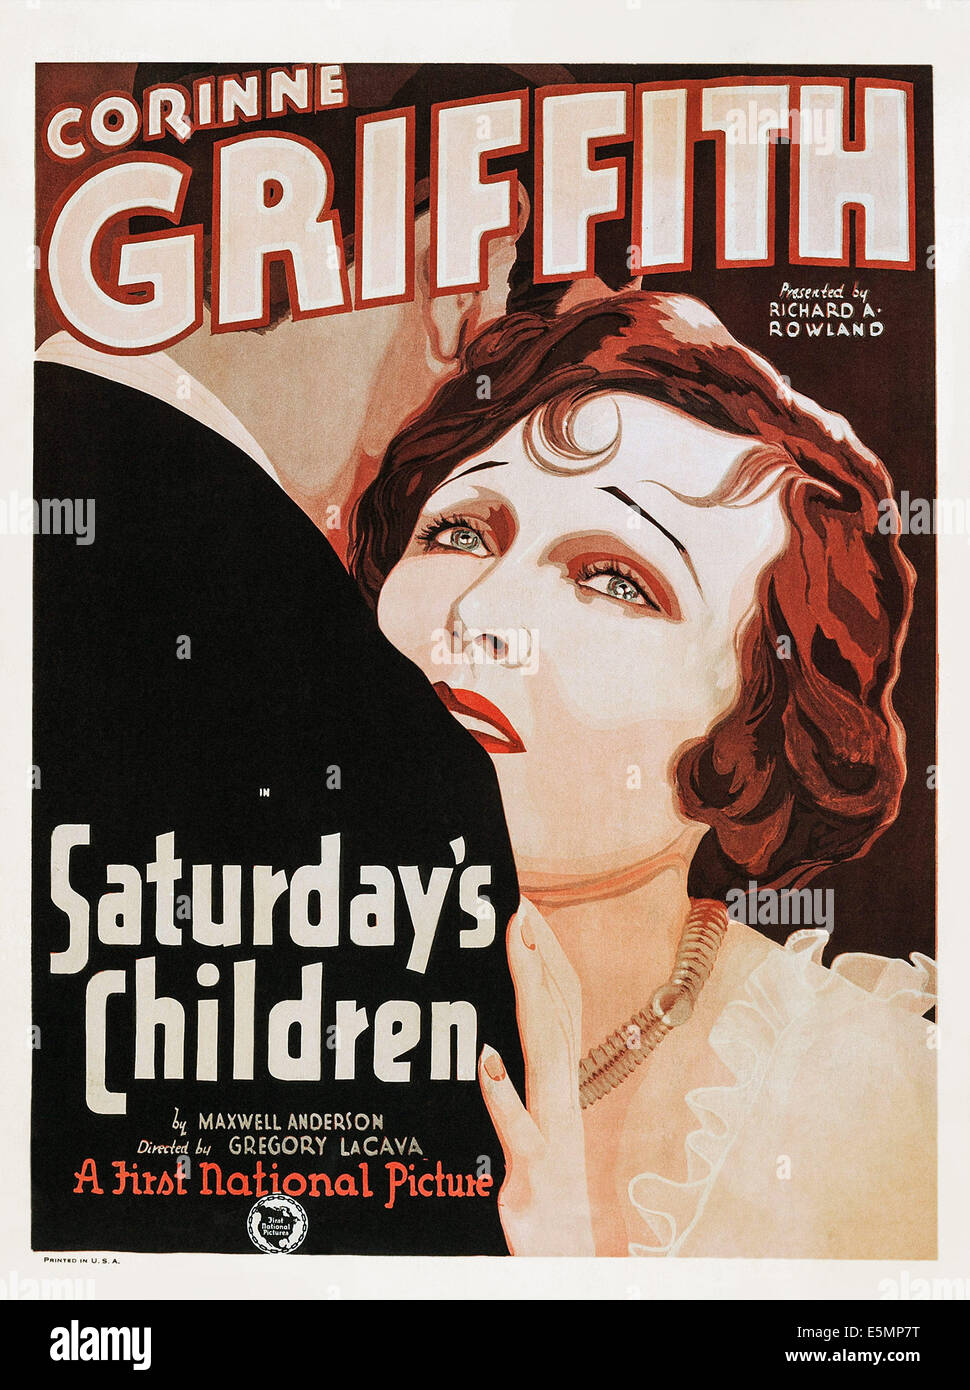 Samedi, les enfants de l'art, l'affiche US Corinne Griffith, 1929 Banque D'Images